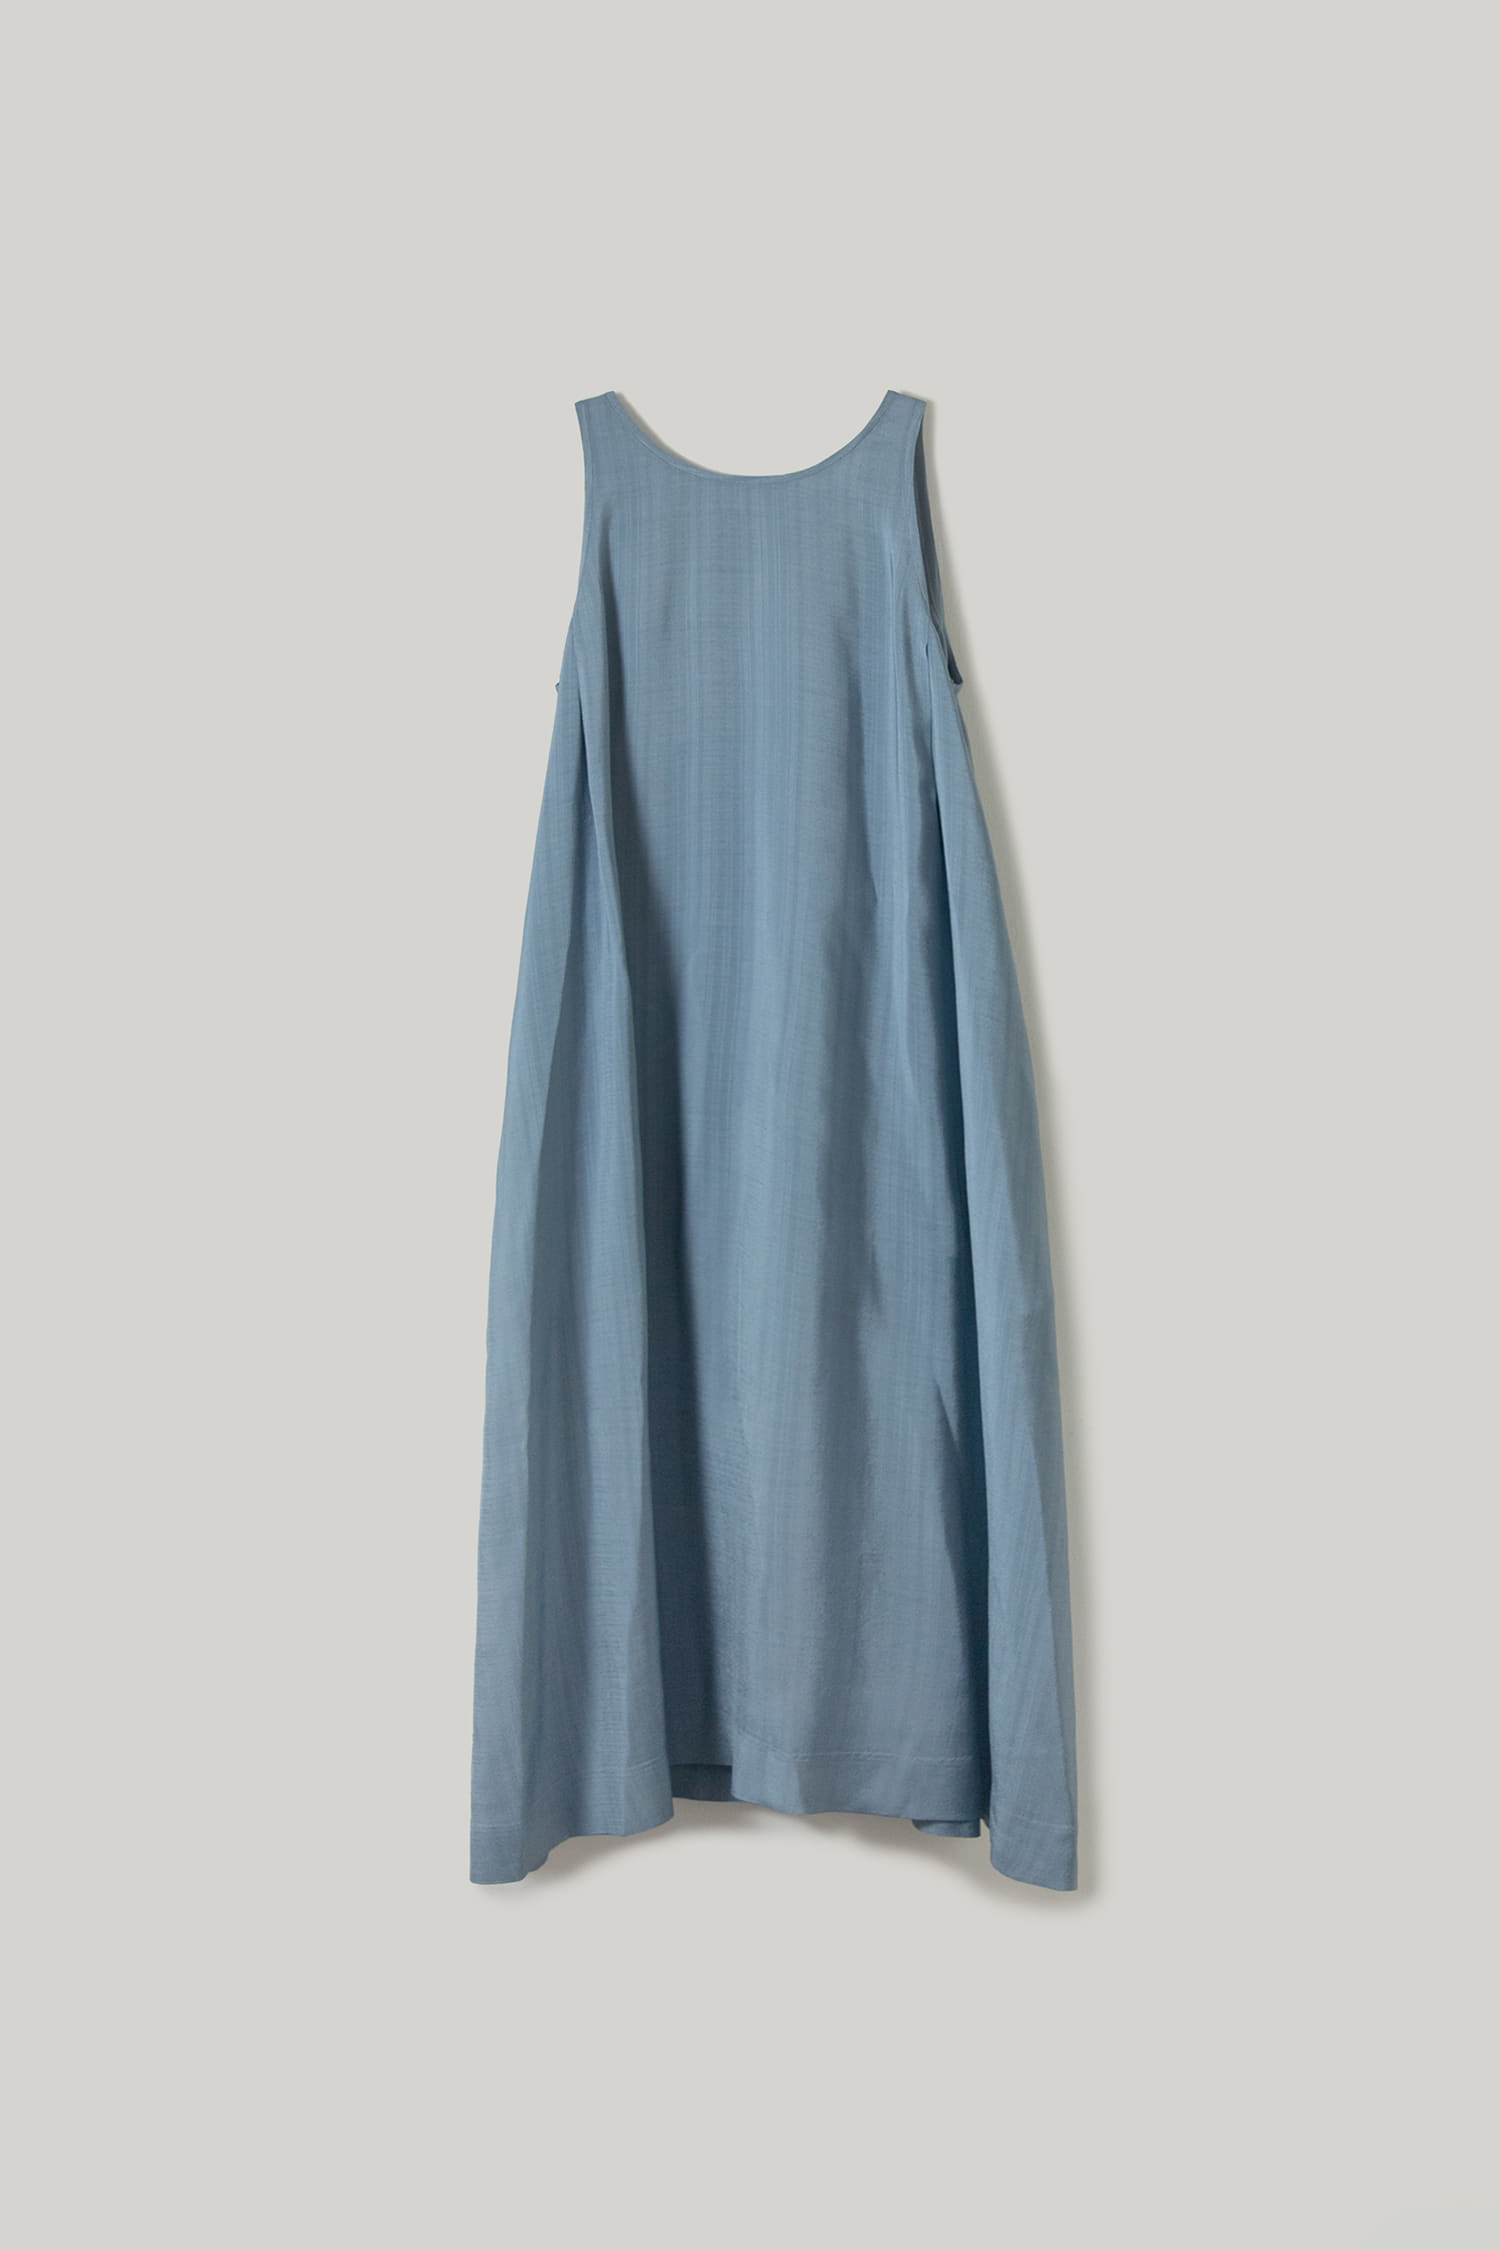 Perna Long Dress(Sea Blue)